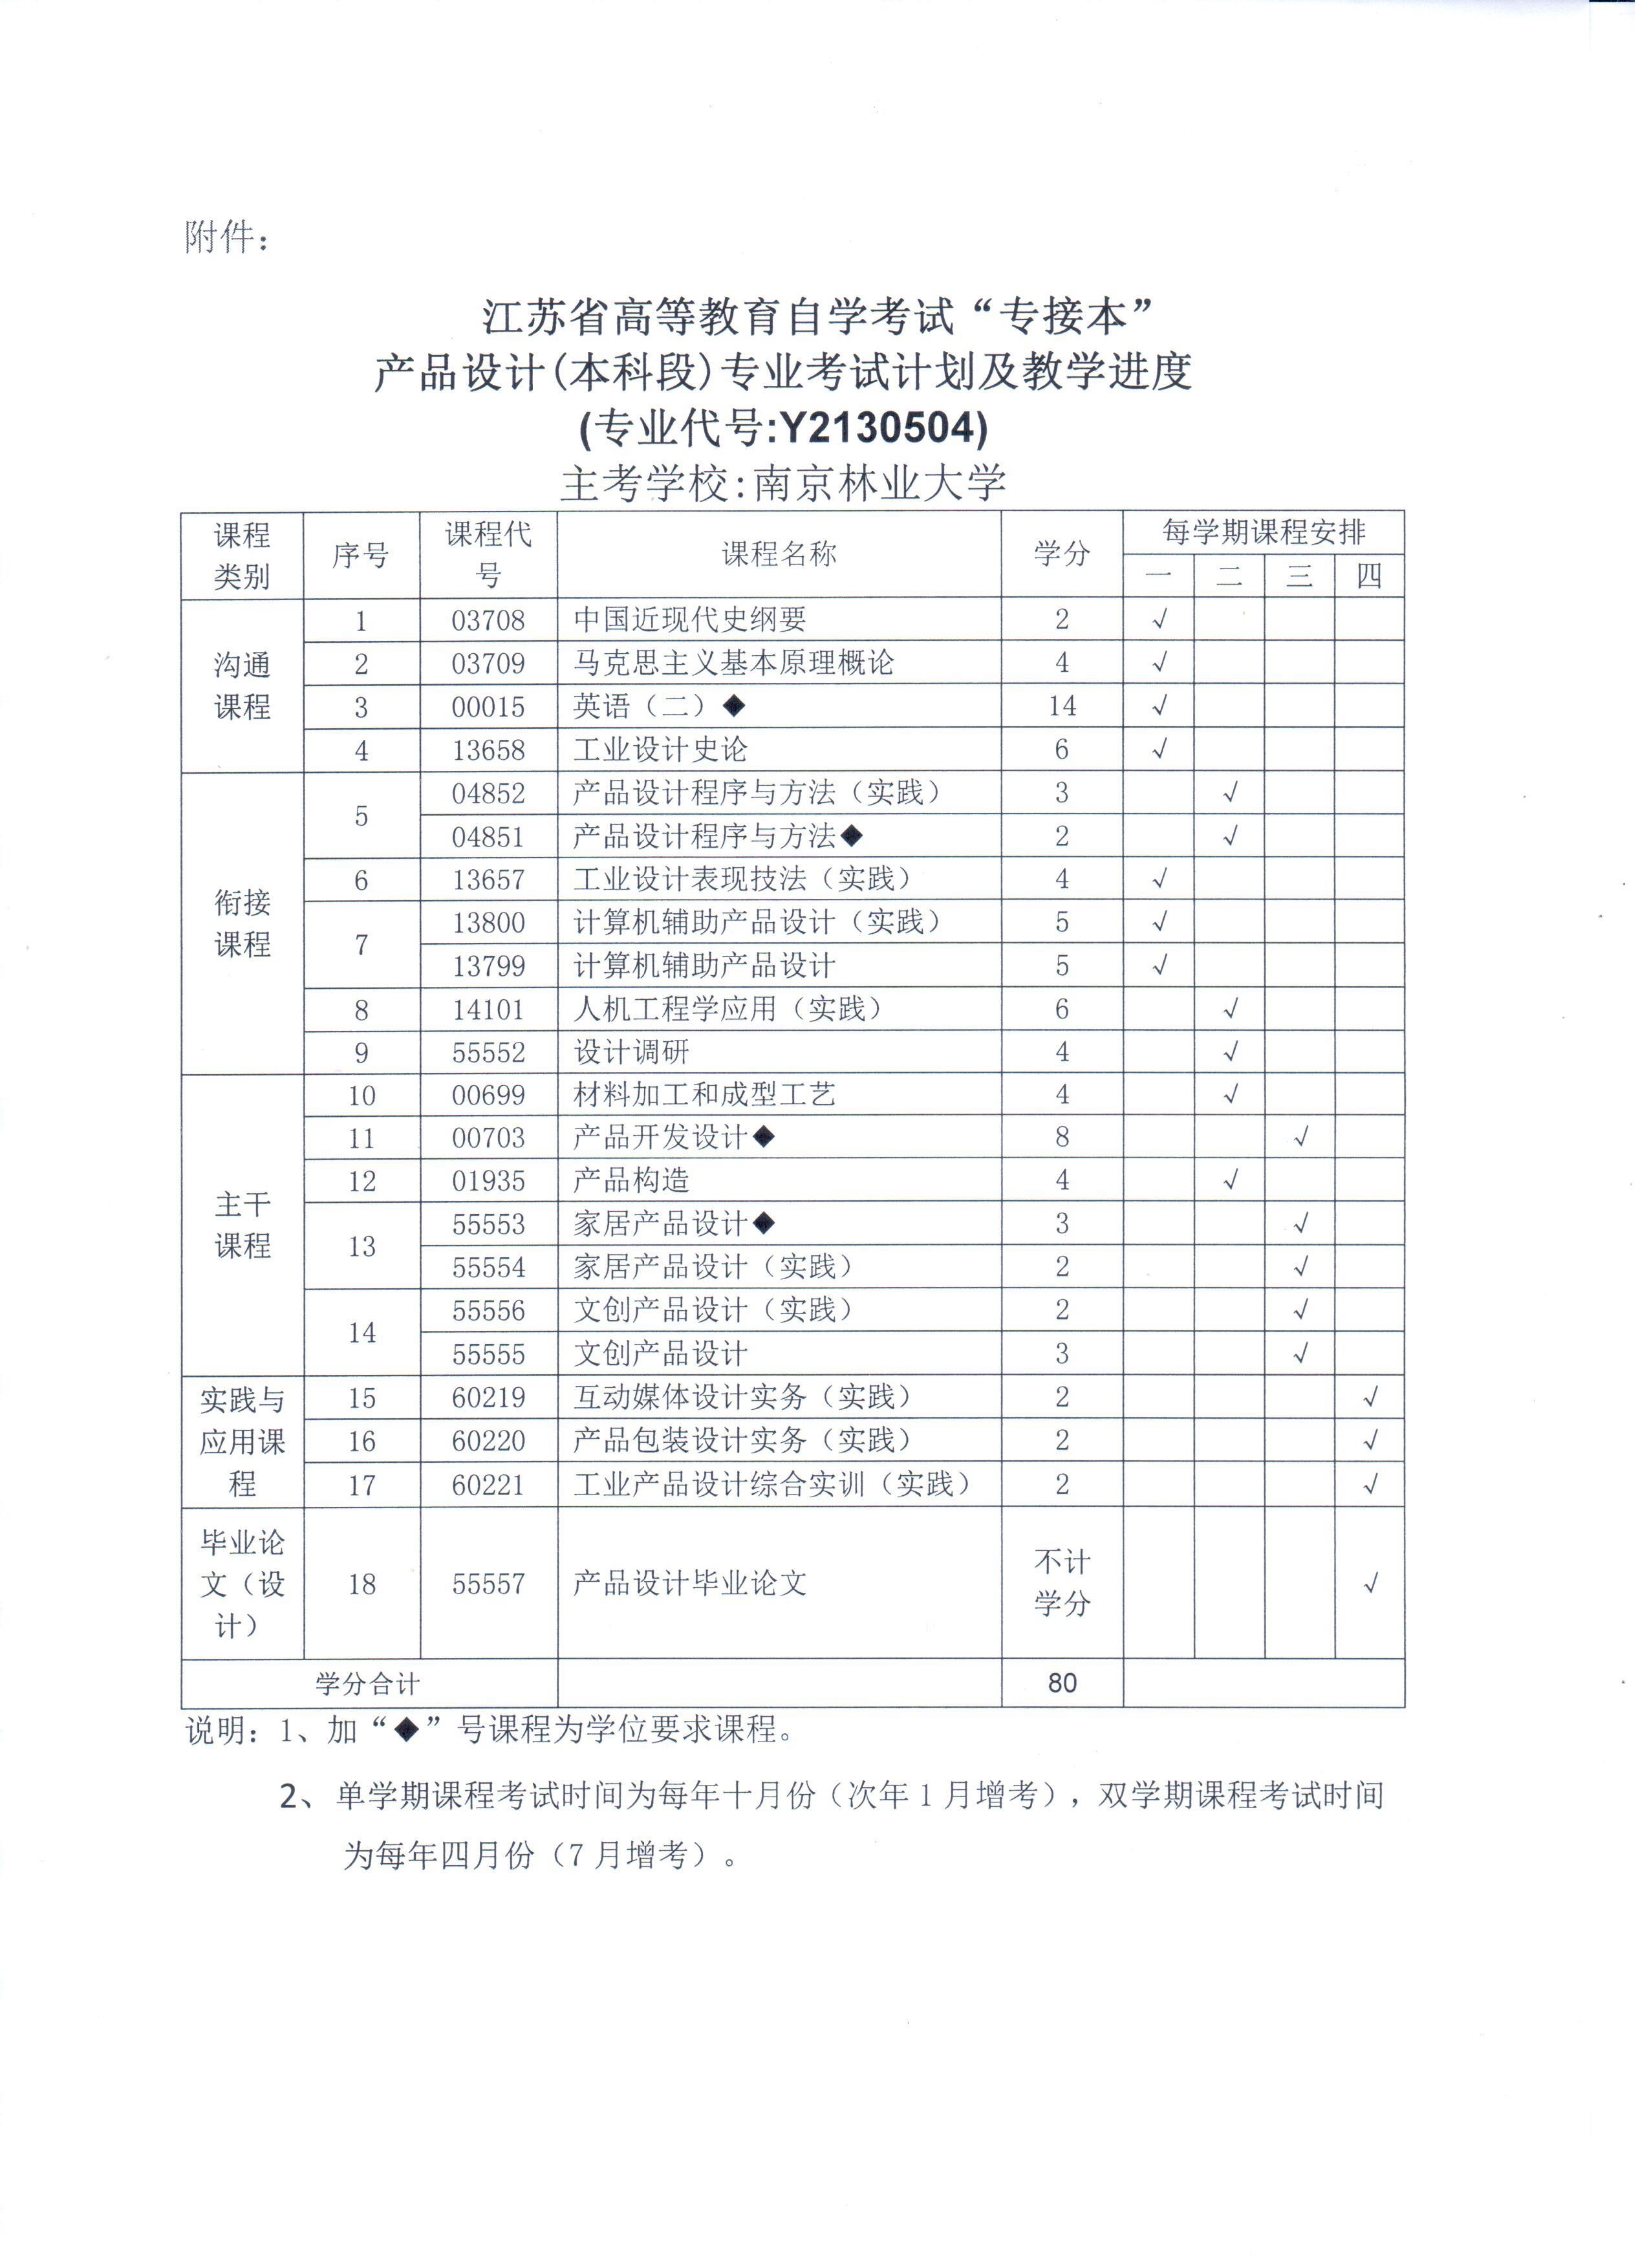 江苏省高等教育自学考试“专接本”产品设计专业考试计划及教学进度